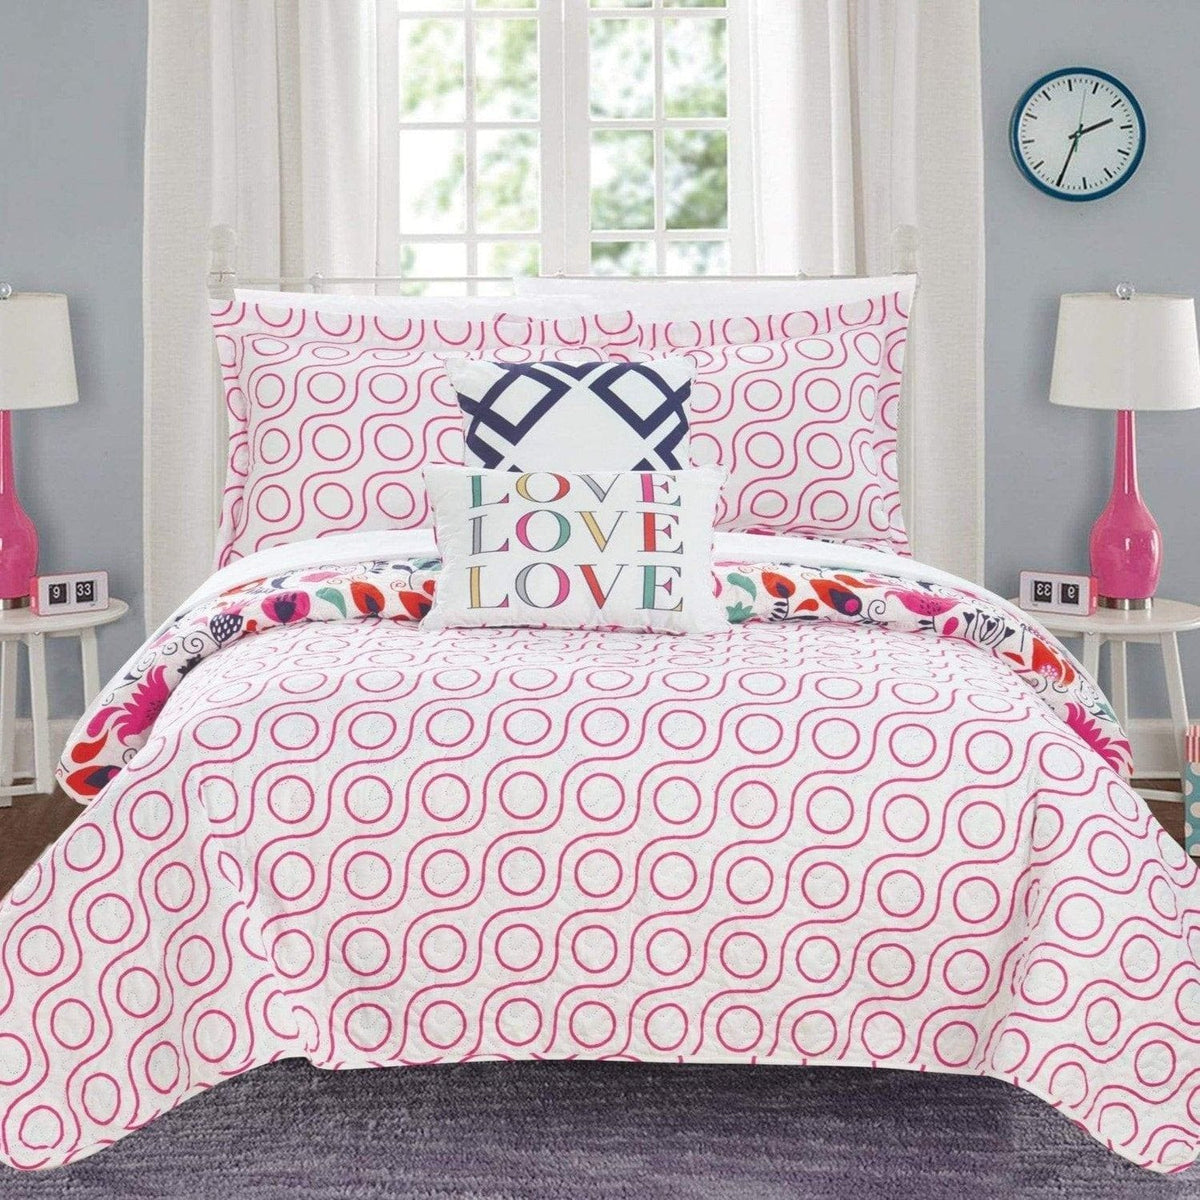 Chic Home Retsina 4 Piece Reversible Floral Quilt Set Bedding